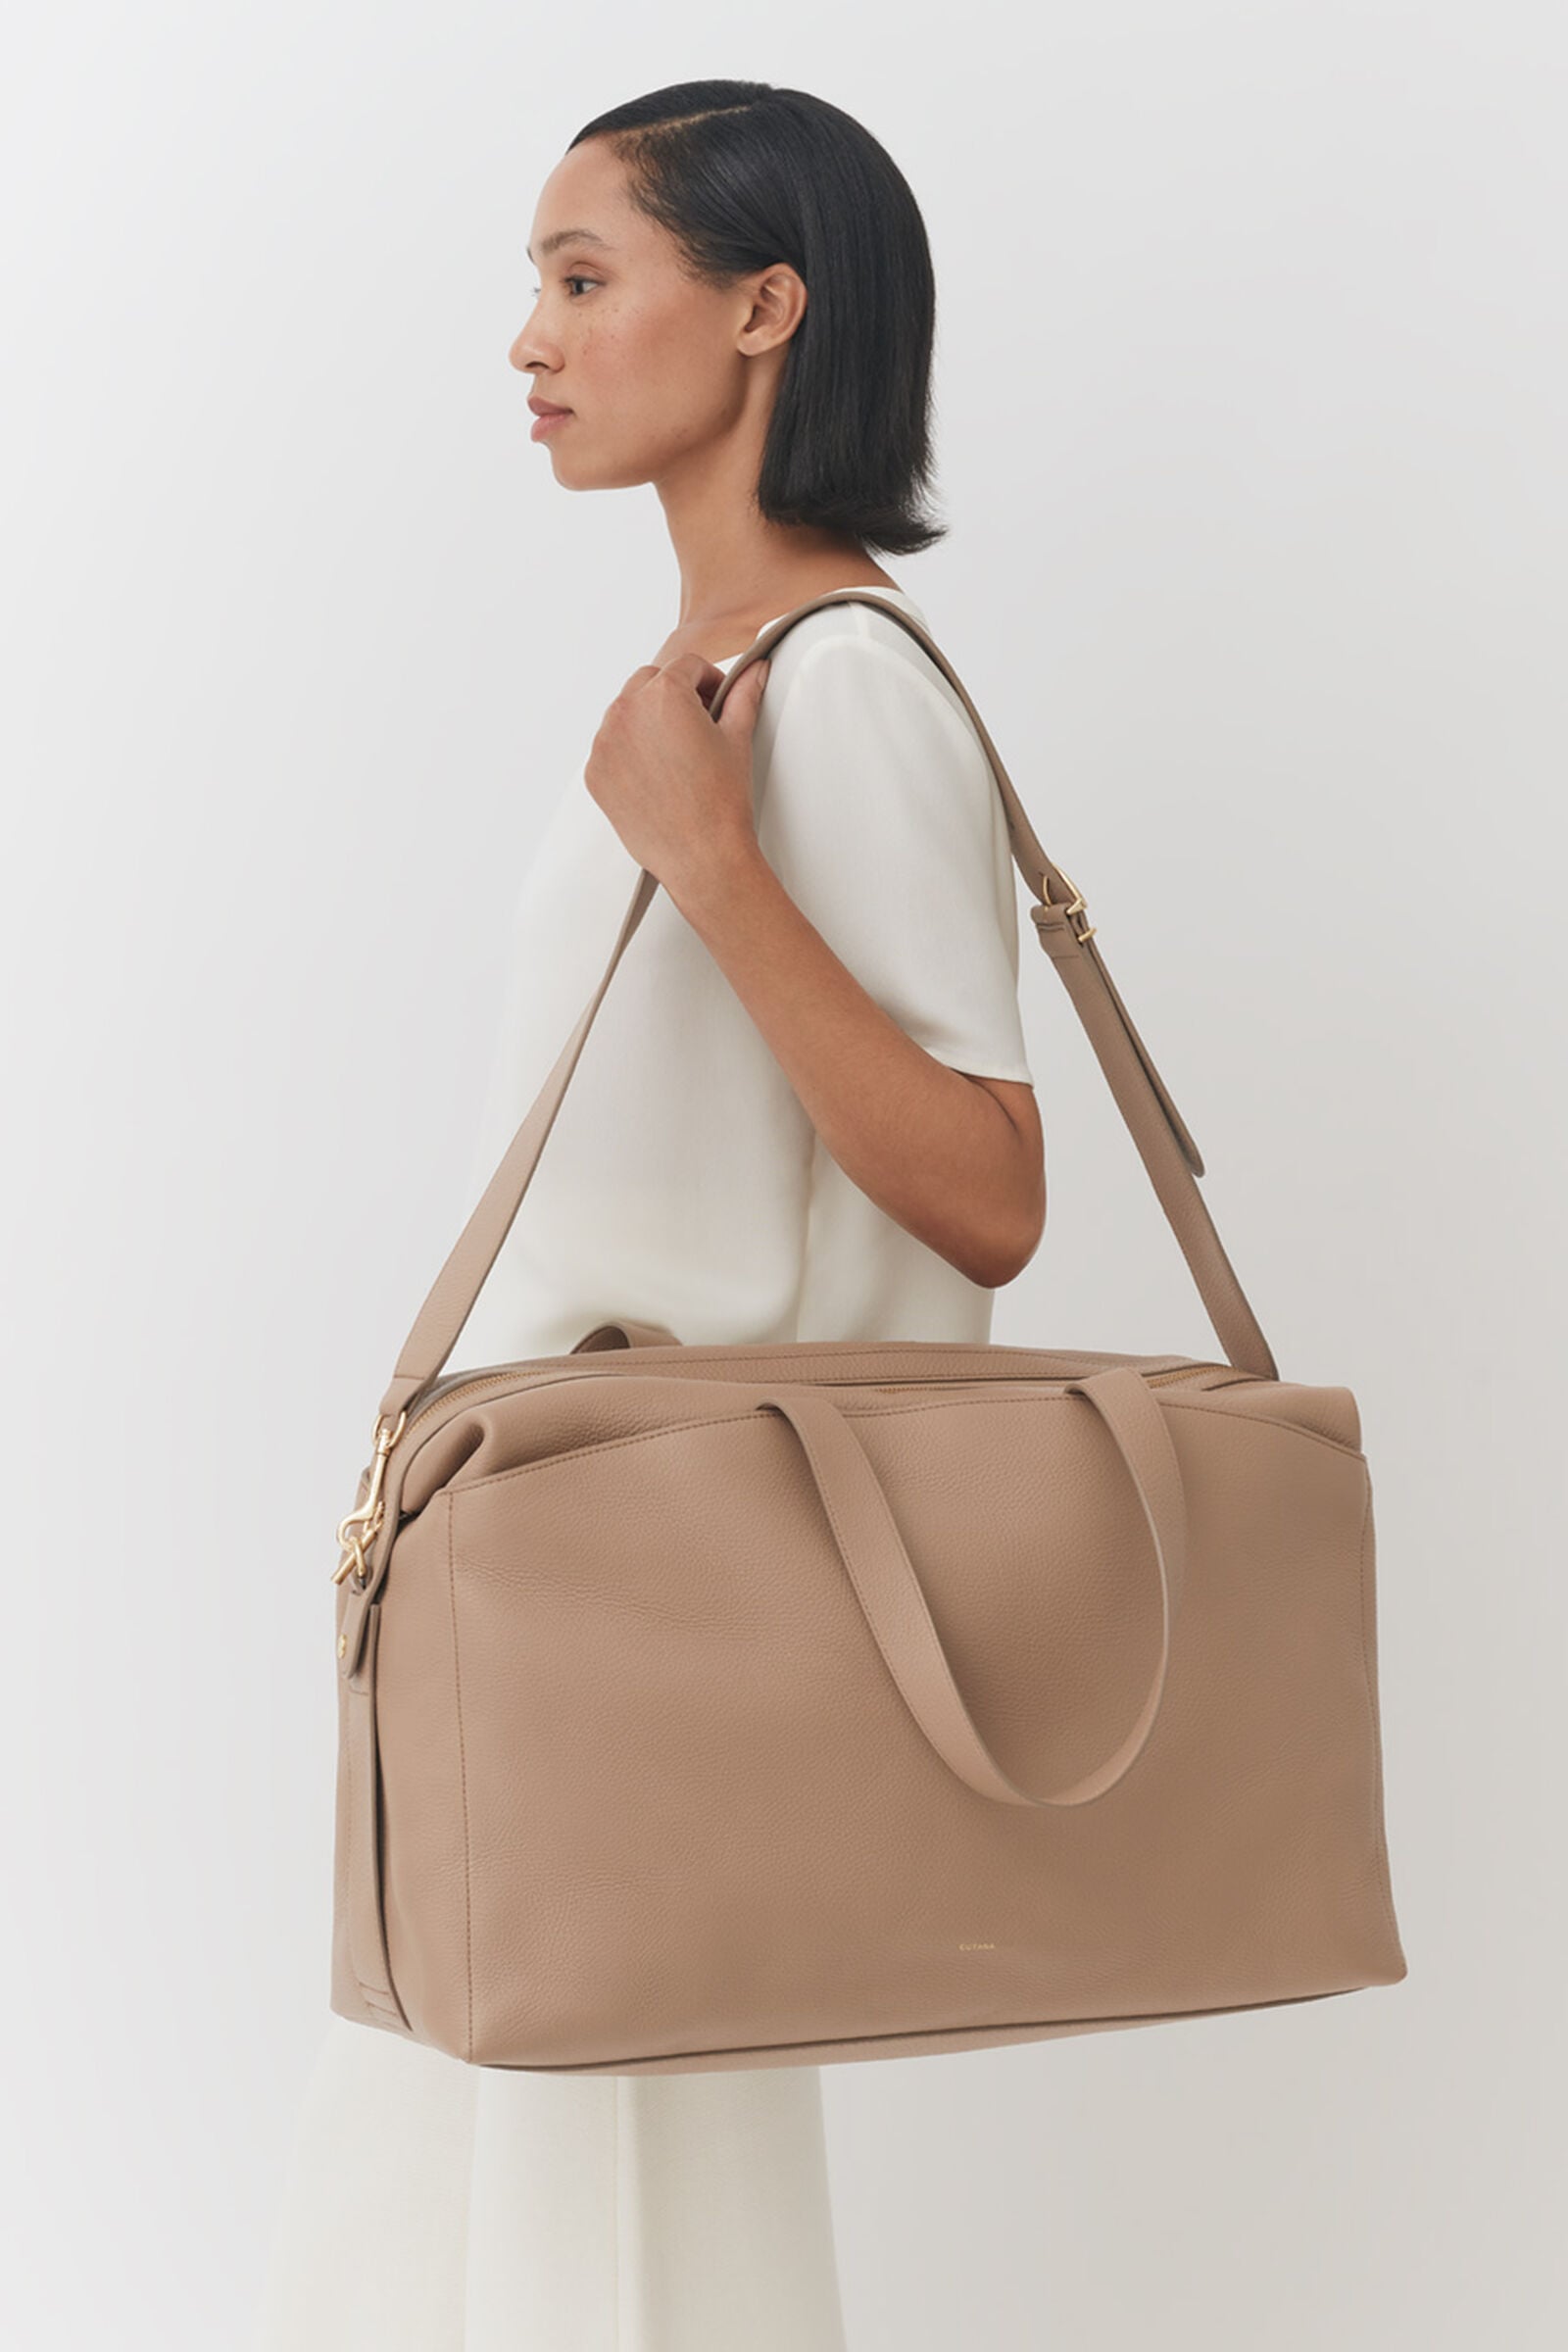 Duffle Bag for Women Overnight Bag Travel Bag Monogram -  UK